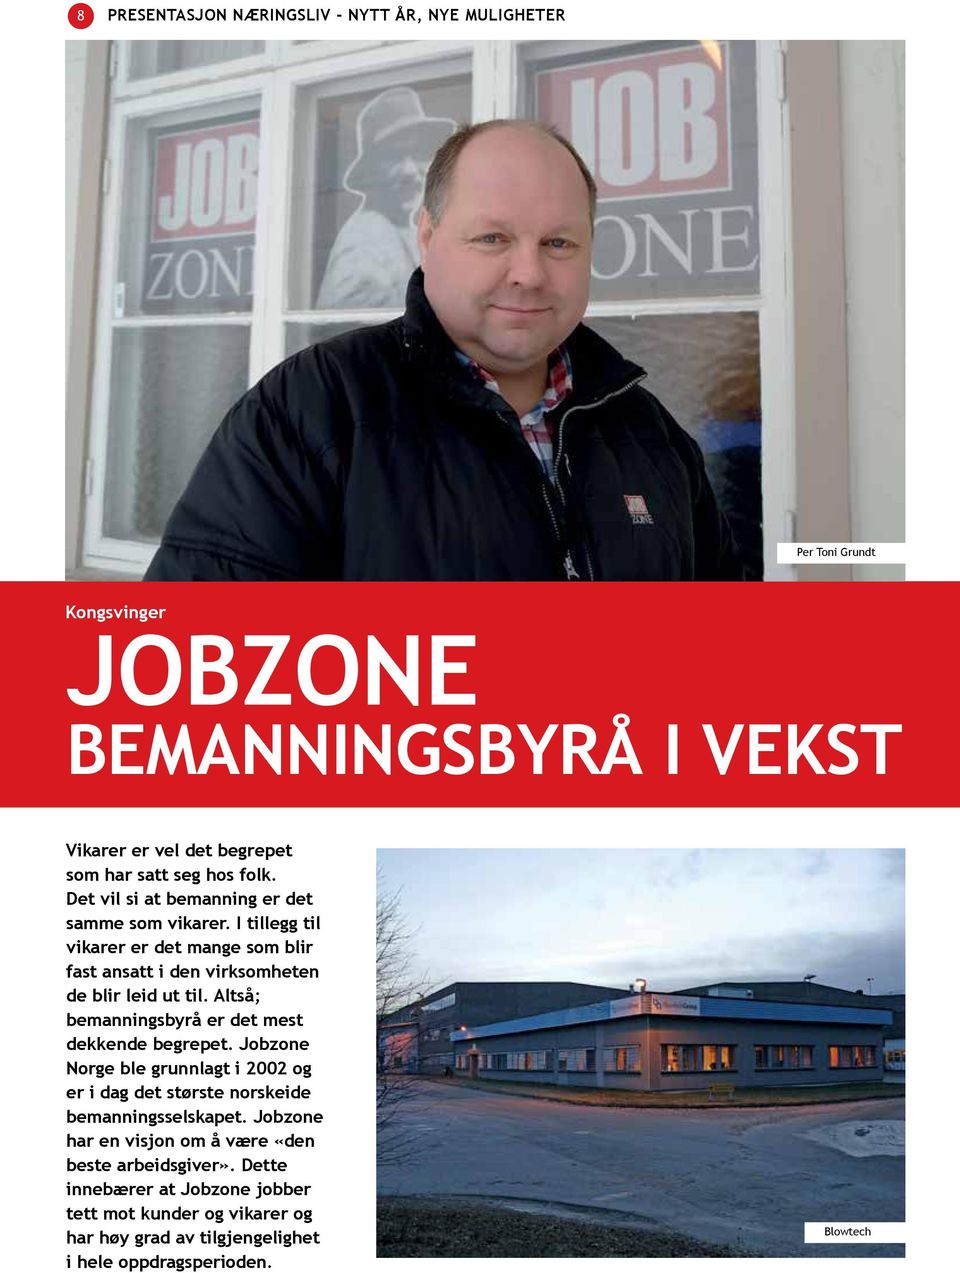 Altså; bemanningsbyrå er det mest dekkende begrepet. Jobzone Norge ble grunnlagt i 2002 og er i dag det største norskeide bemanningsselskapet.